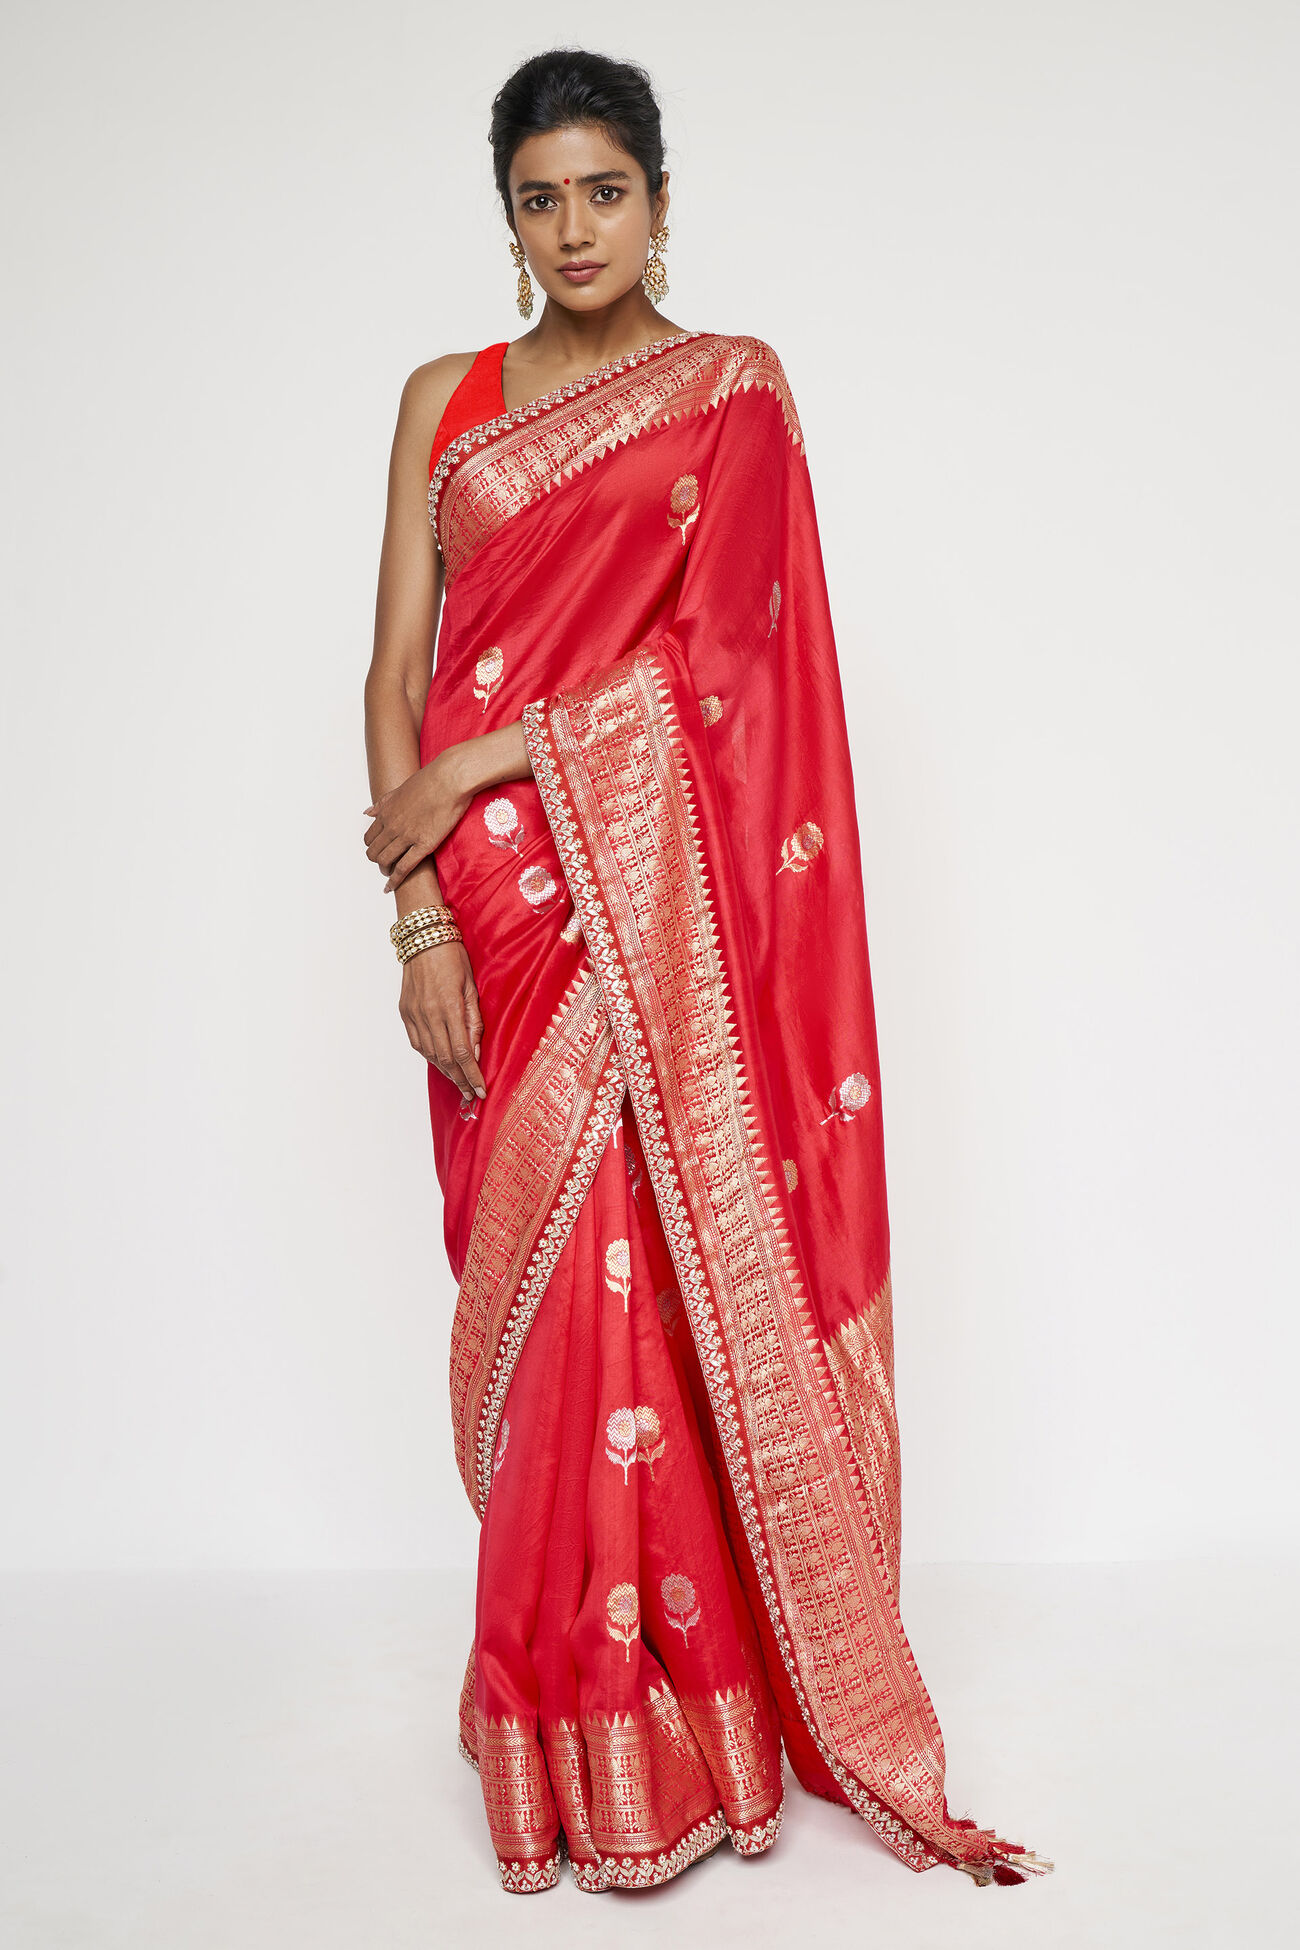 Aganaya Benarasi Saree - Red, Red, image 1